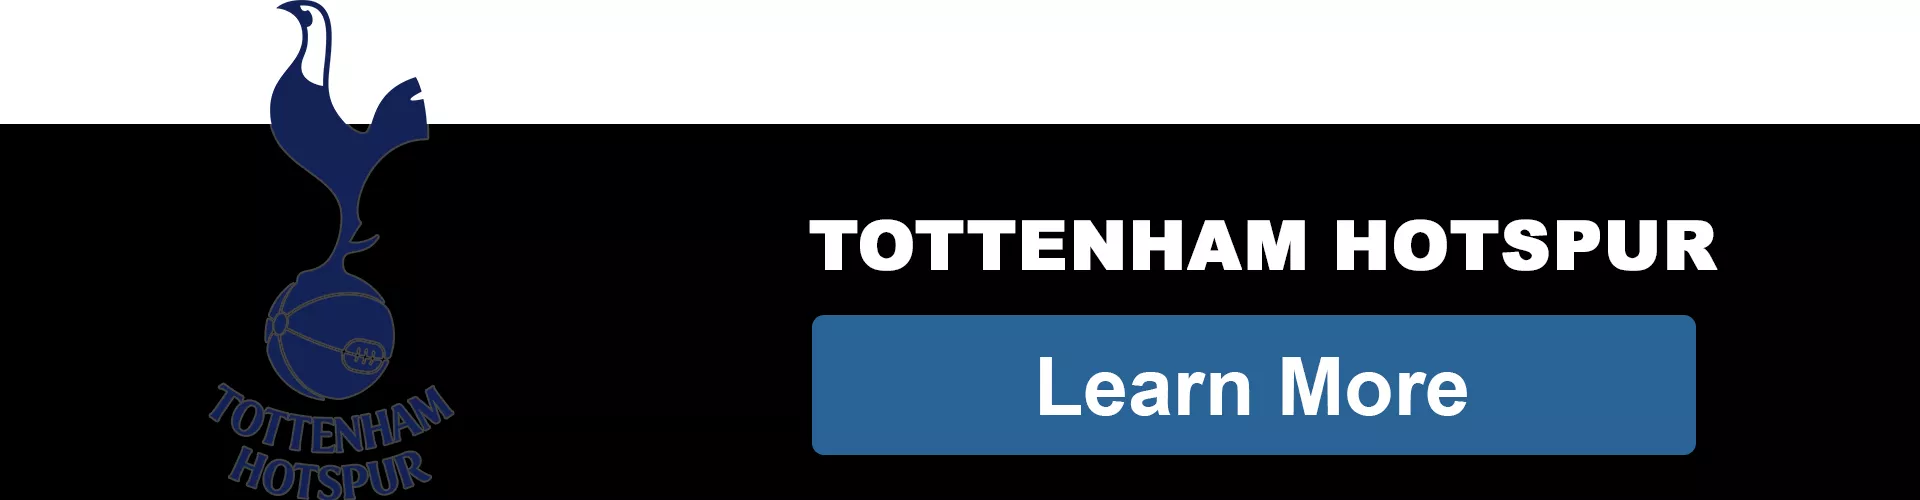 Tottenham Hotspur F.C. - bestsoccerstore